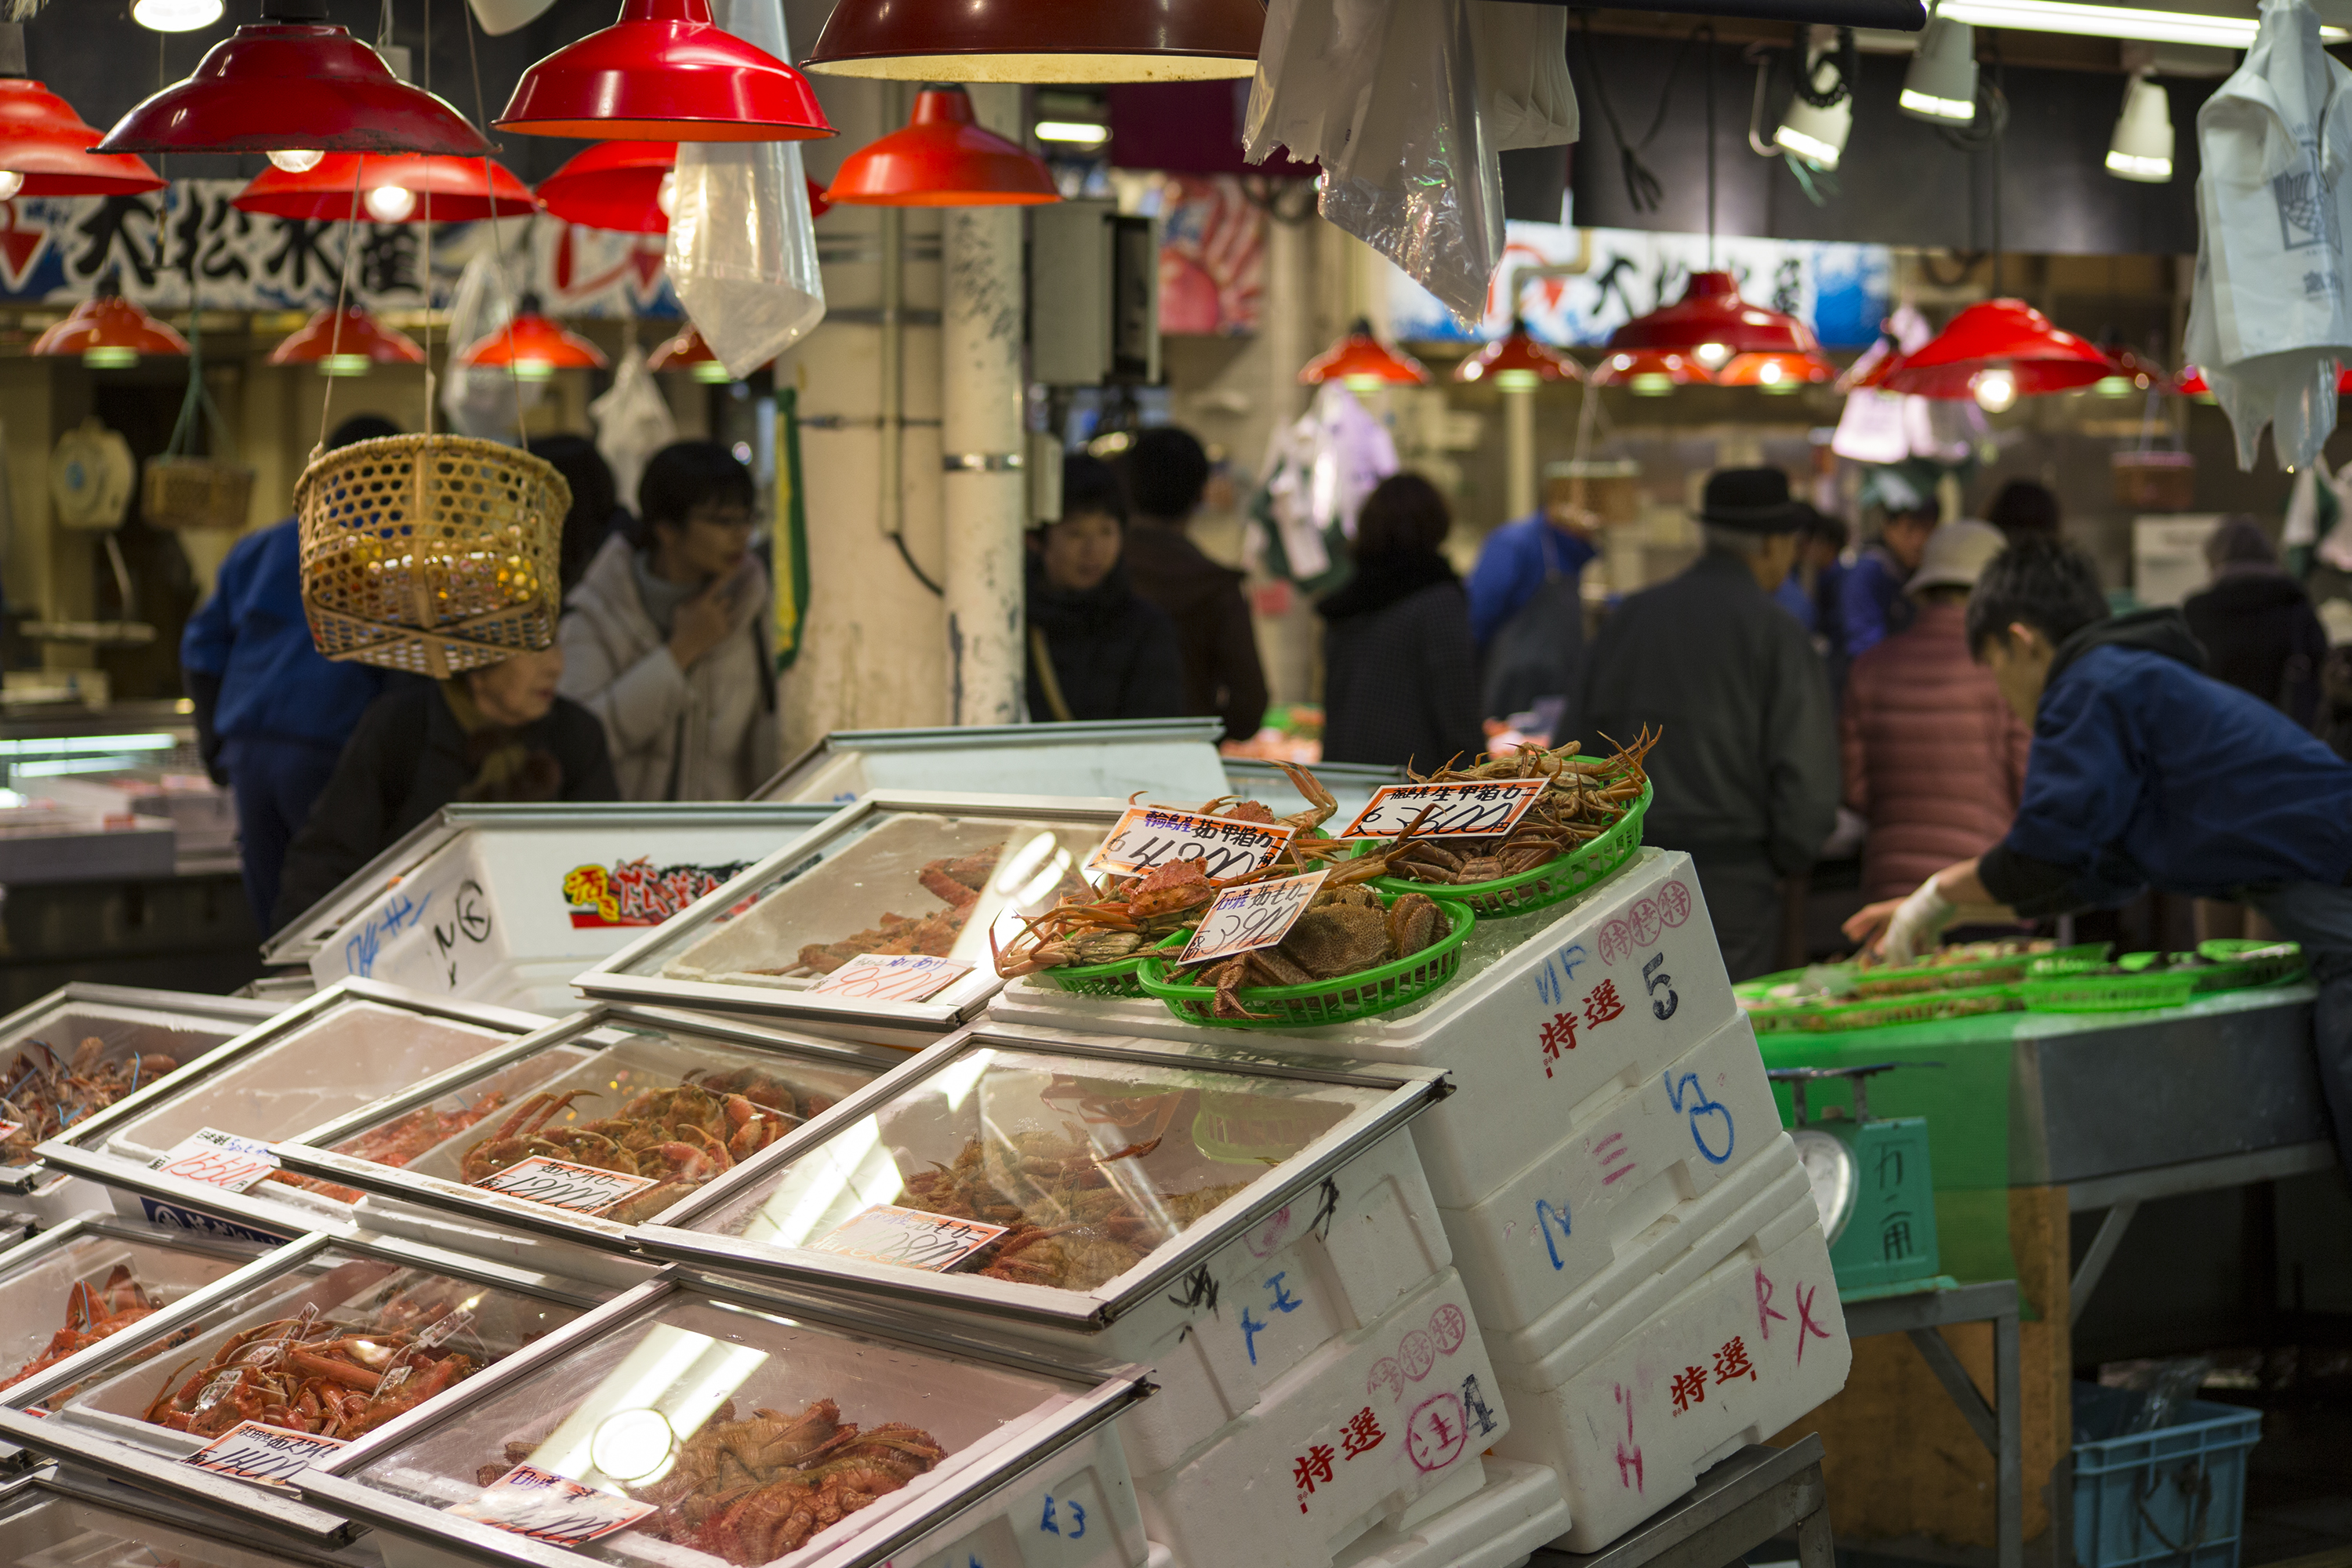 Ohmi-cho Market